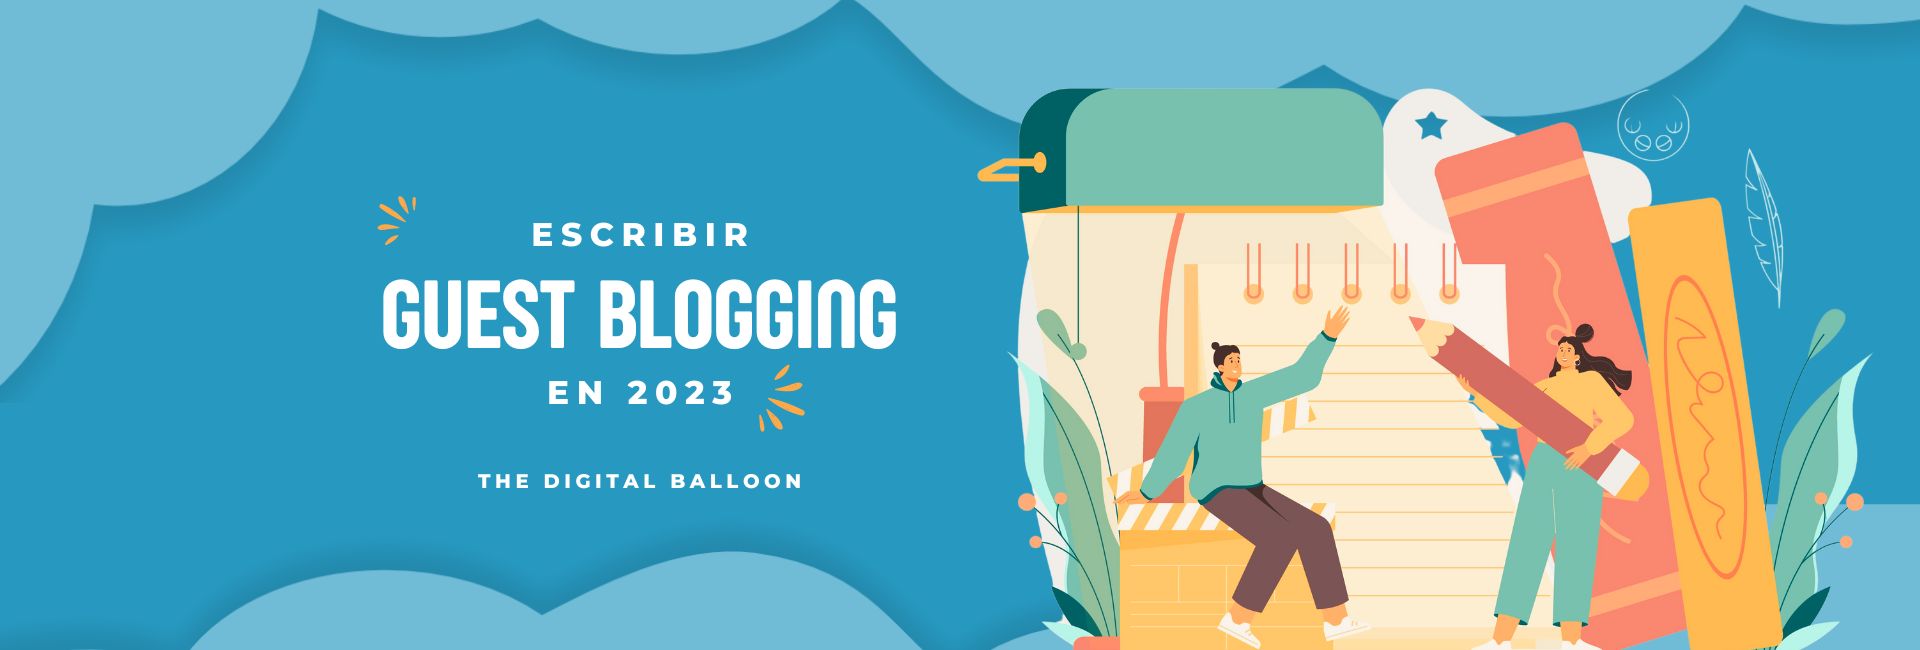 Guest Blogging en 2023, ¿Bueno para el SEO?